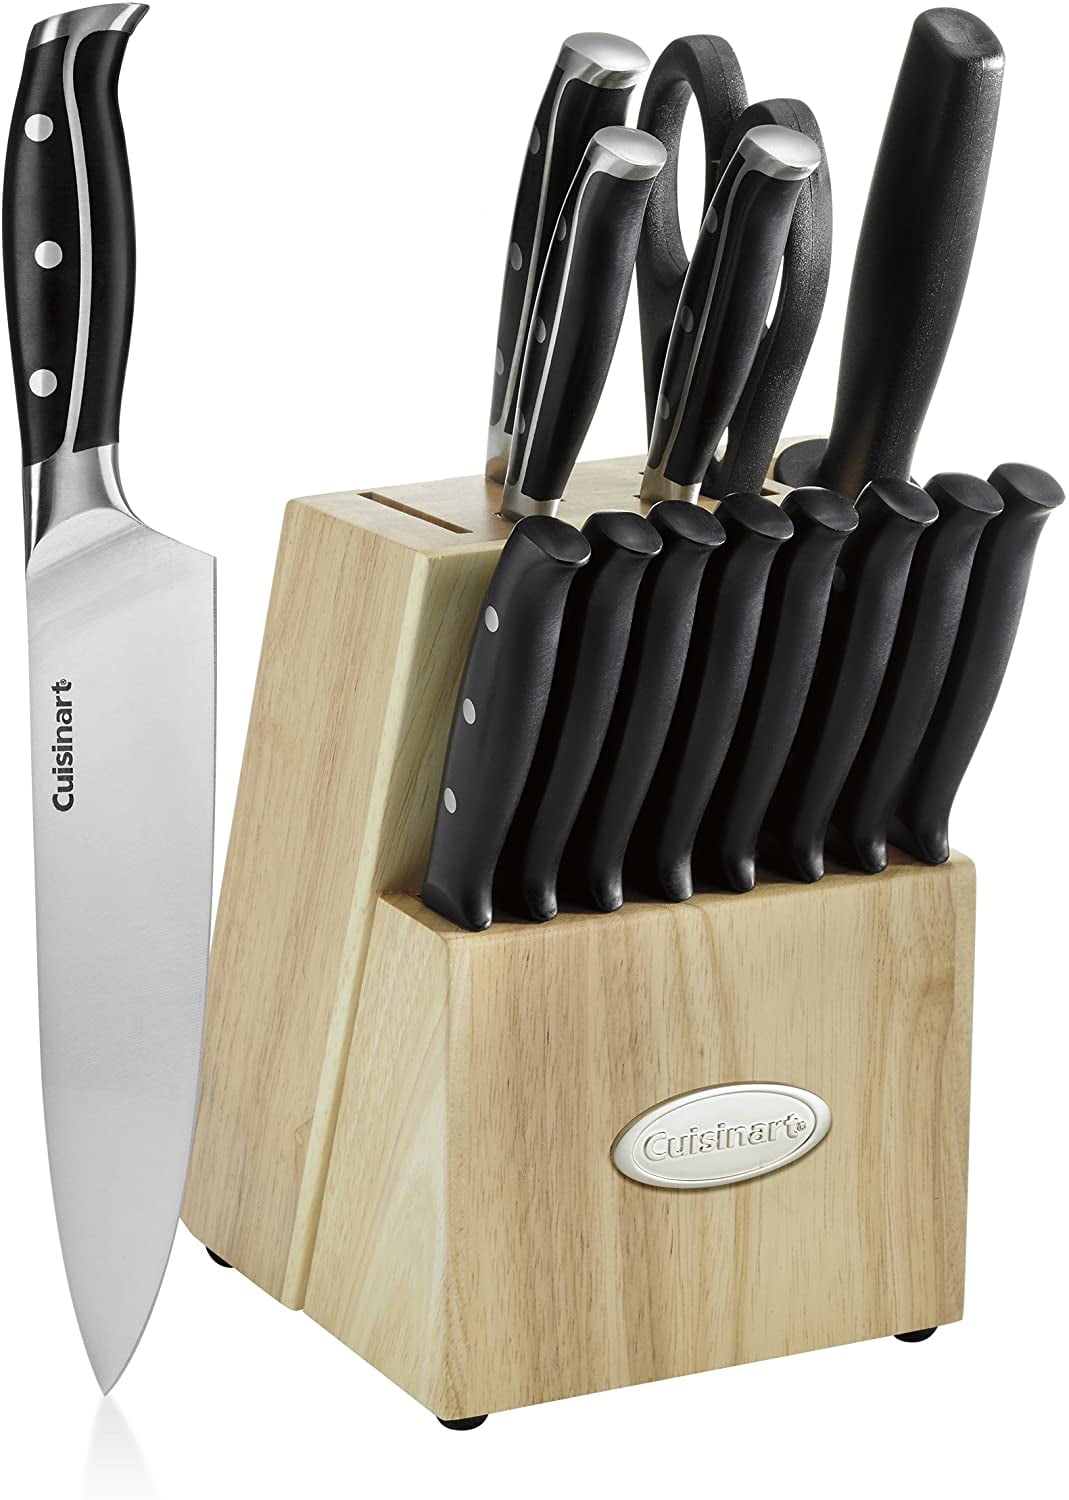 Cuisinart 3-Slot Foldable Knife Sharpener